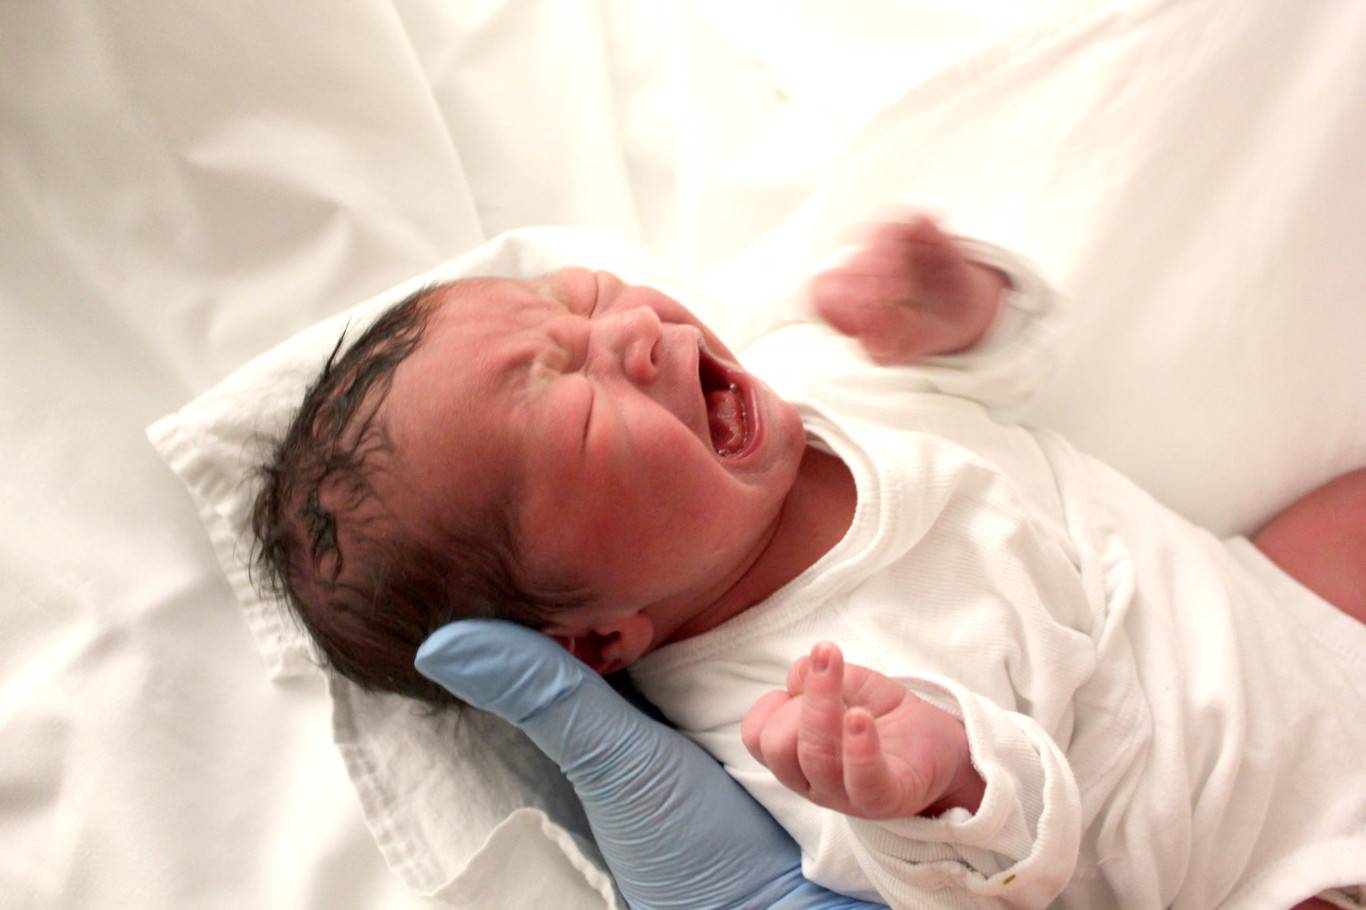 12 удивительных фактов о новорожденных - кликабол. всё самое интересное - здесь - 1 мая - 43547581583 - медиаплатформа миртесен